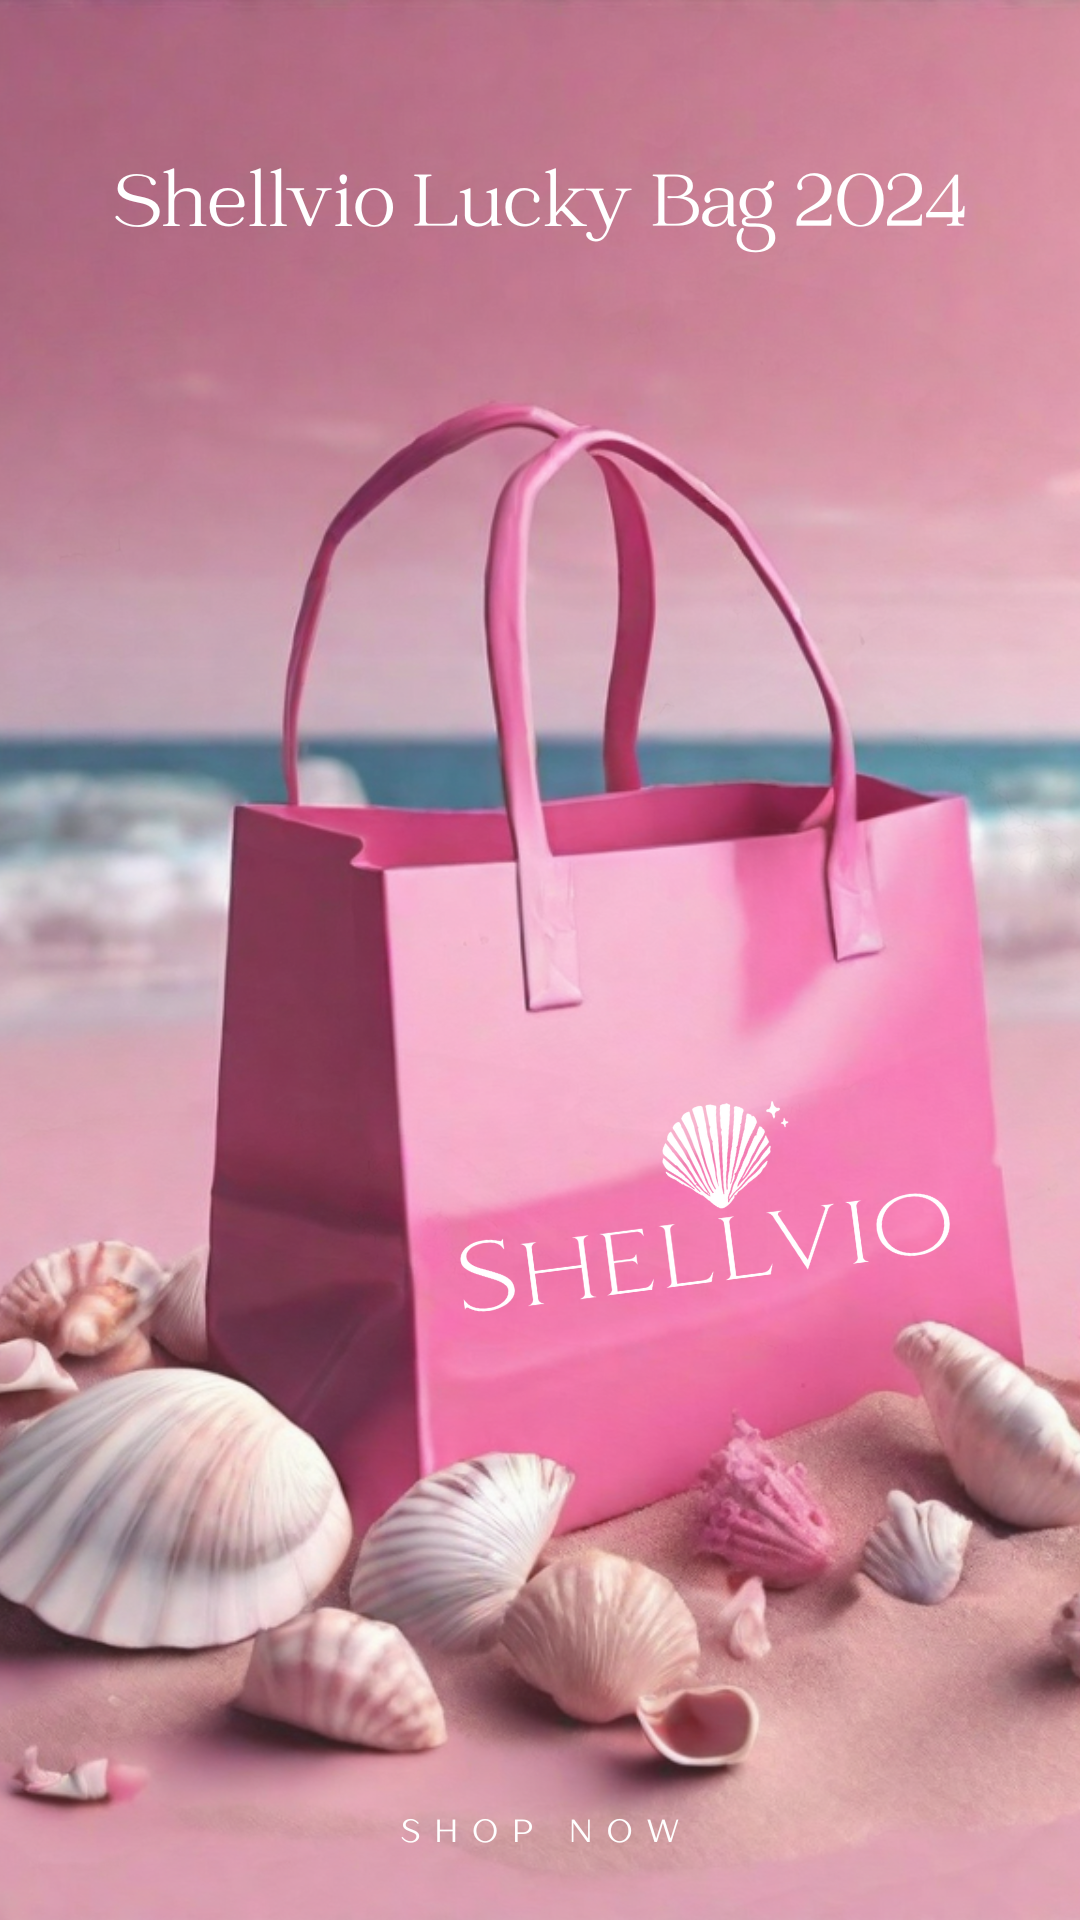 Shellvio Lucky Bag 2024